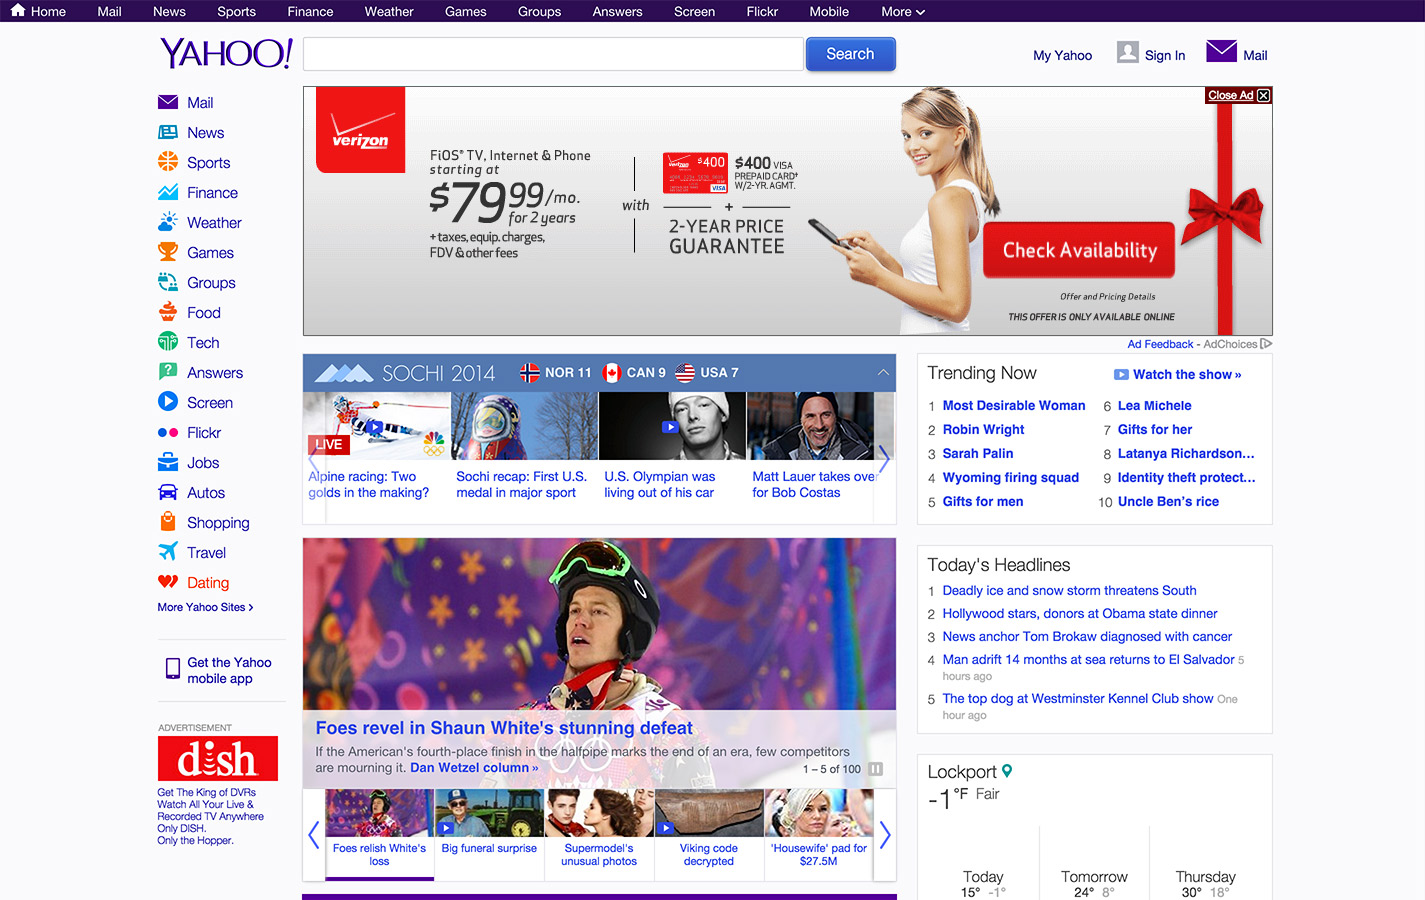 Yahoo Ad 2014_VerizonhomepageBillboard.jpg